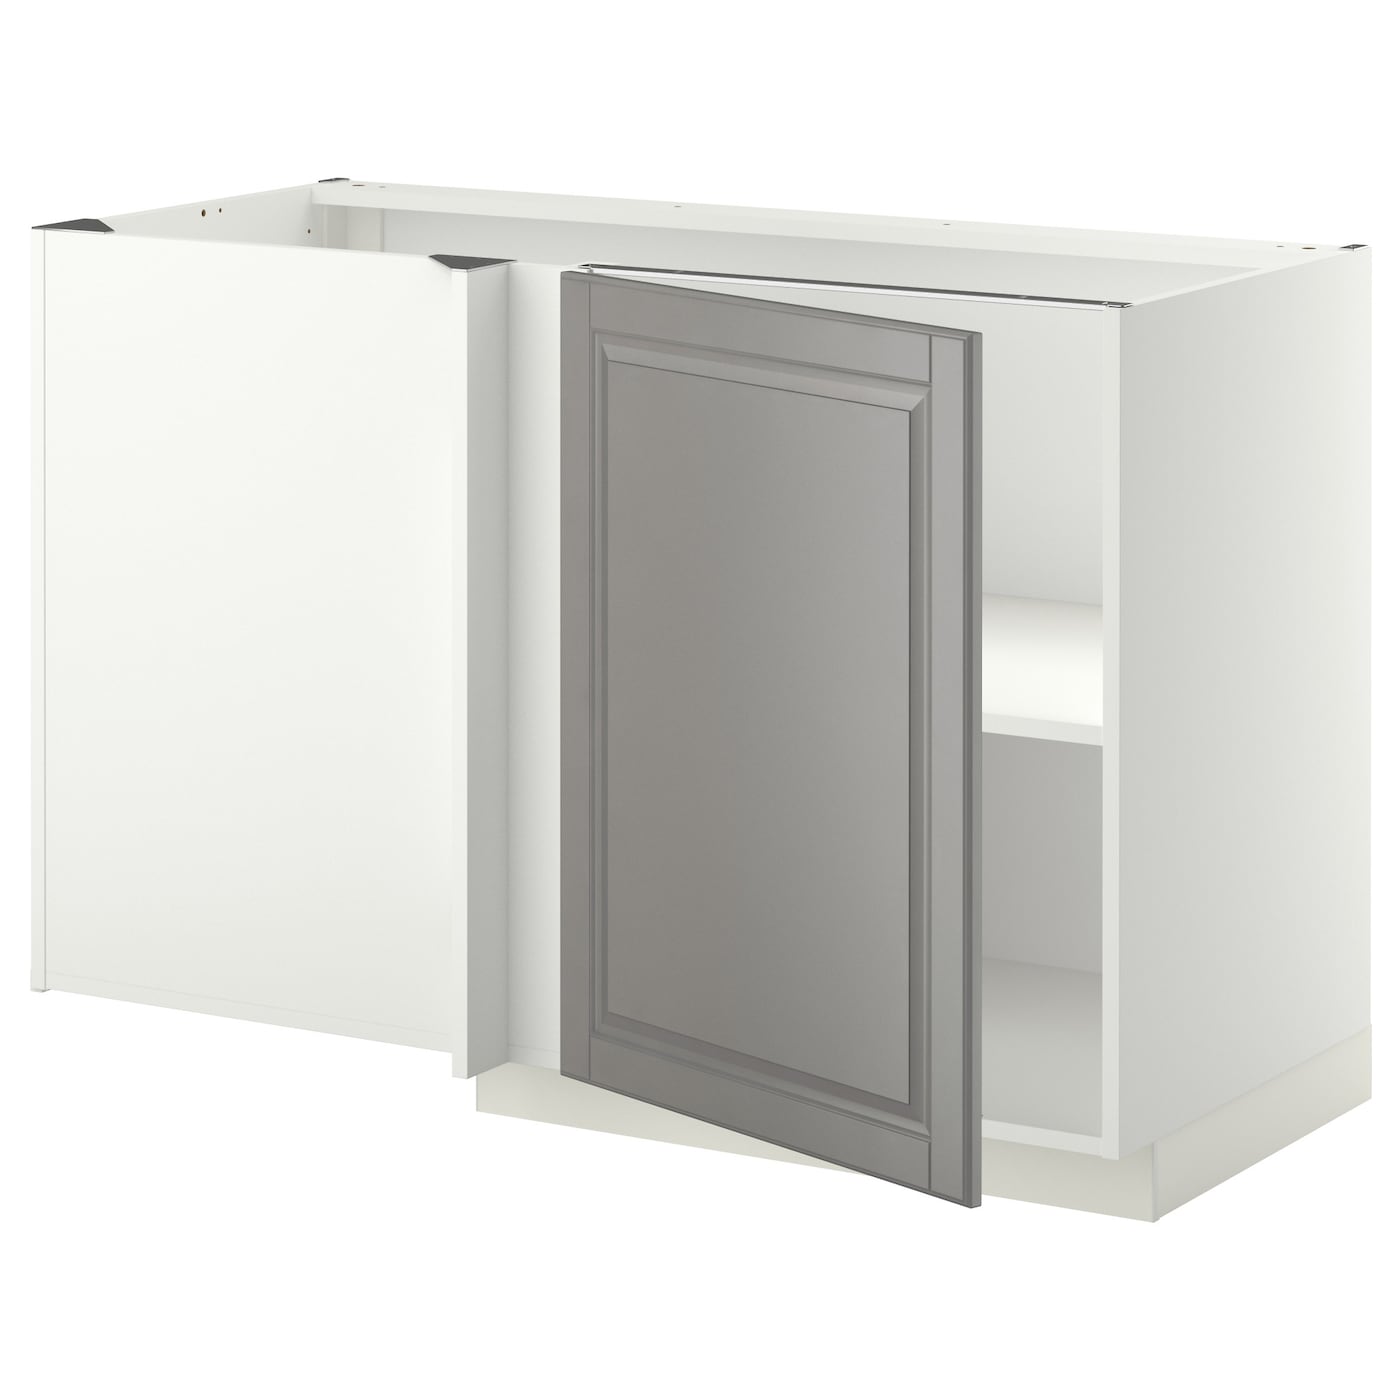 Напольный кухонный шкаф  - IKEA METOD, 88x67,5x127,5см, белый/серый, МЕТОД ИКЕА